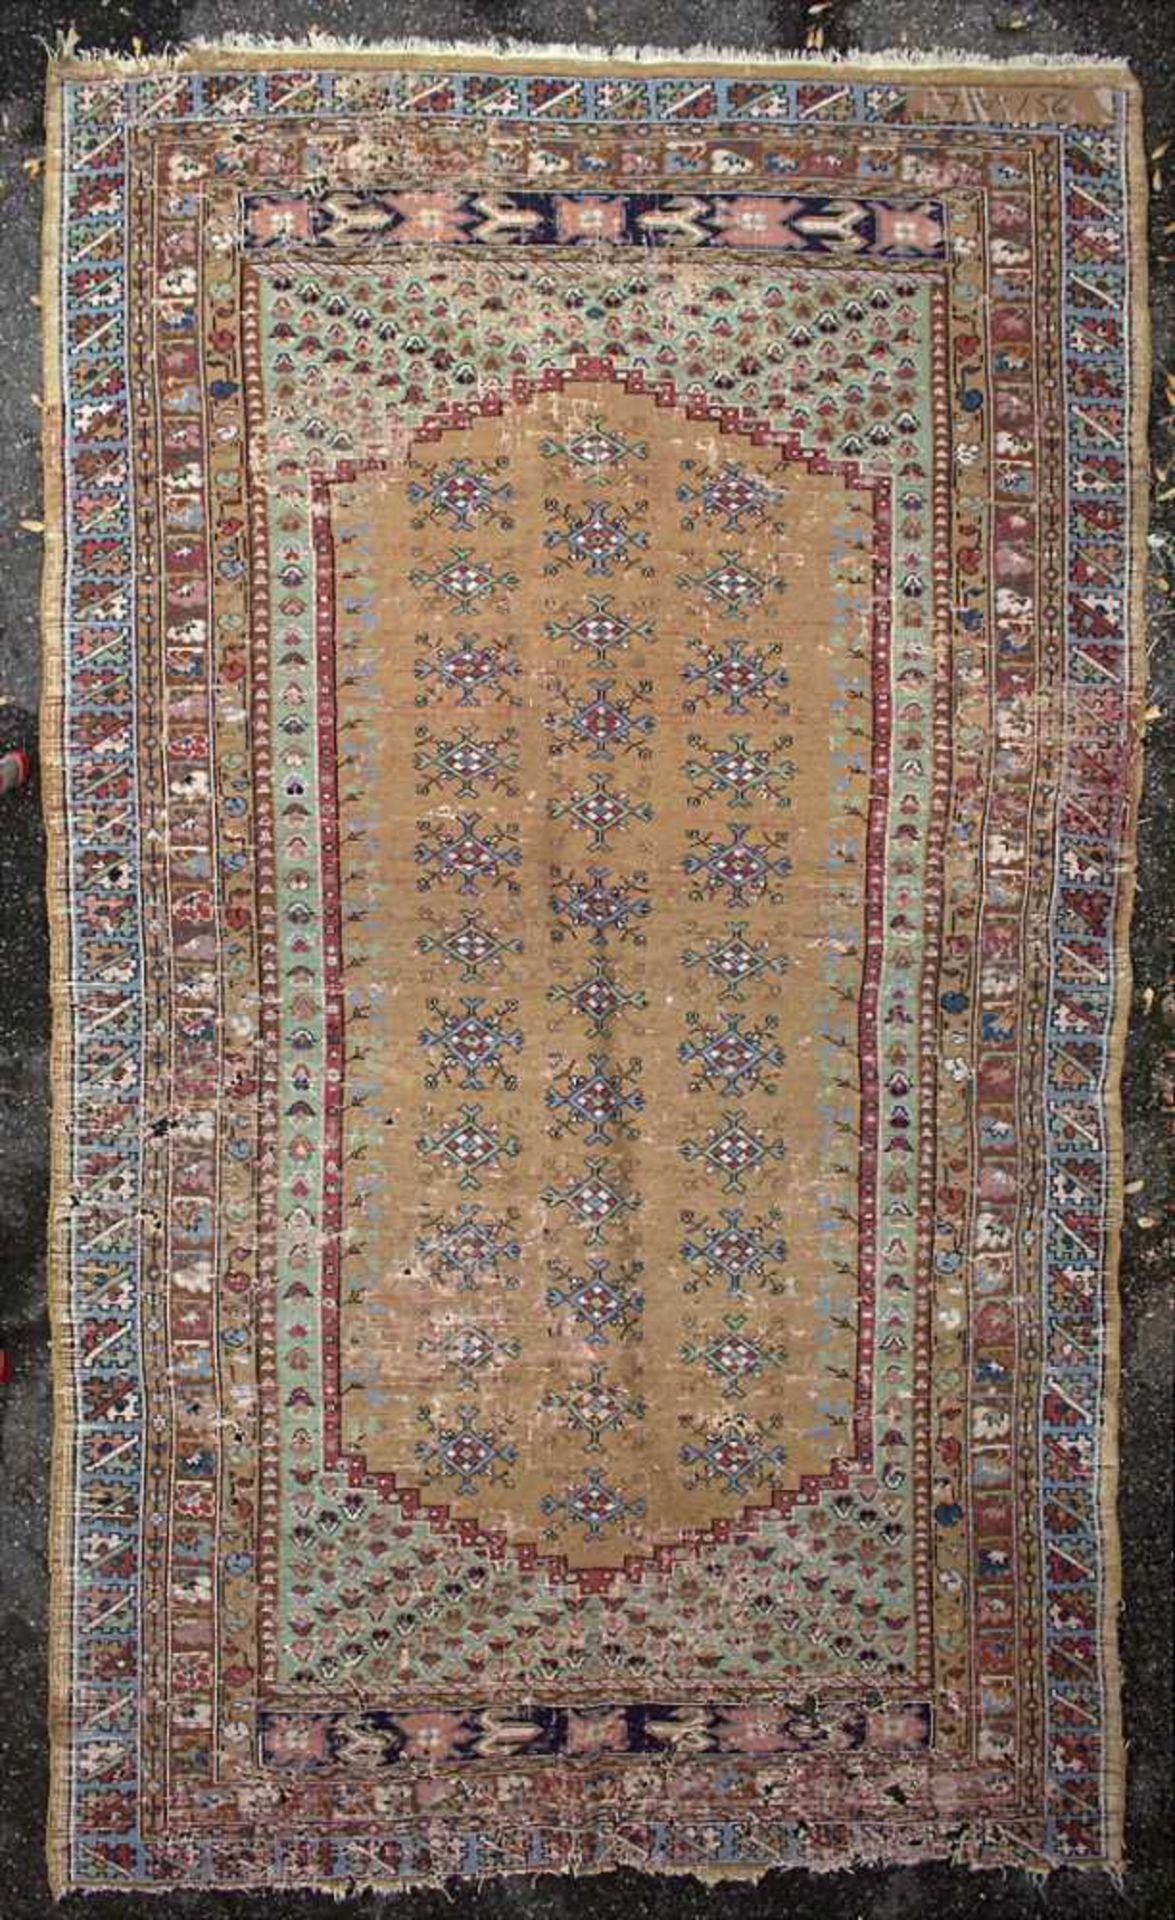 Orientteppich / An oriental carpetMaterial: Wolle auf Baumwolle, Maße: 242 x 140 cm, Zustand: - Image 3 of 5